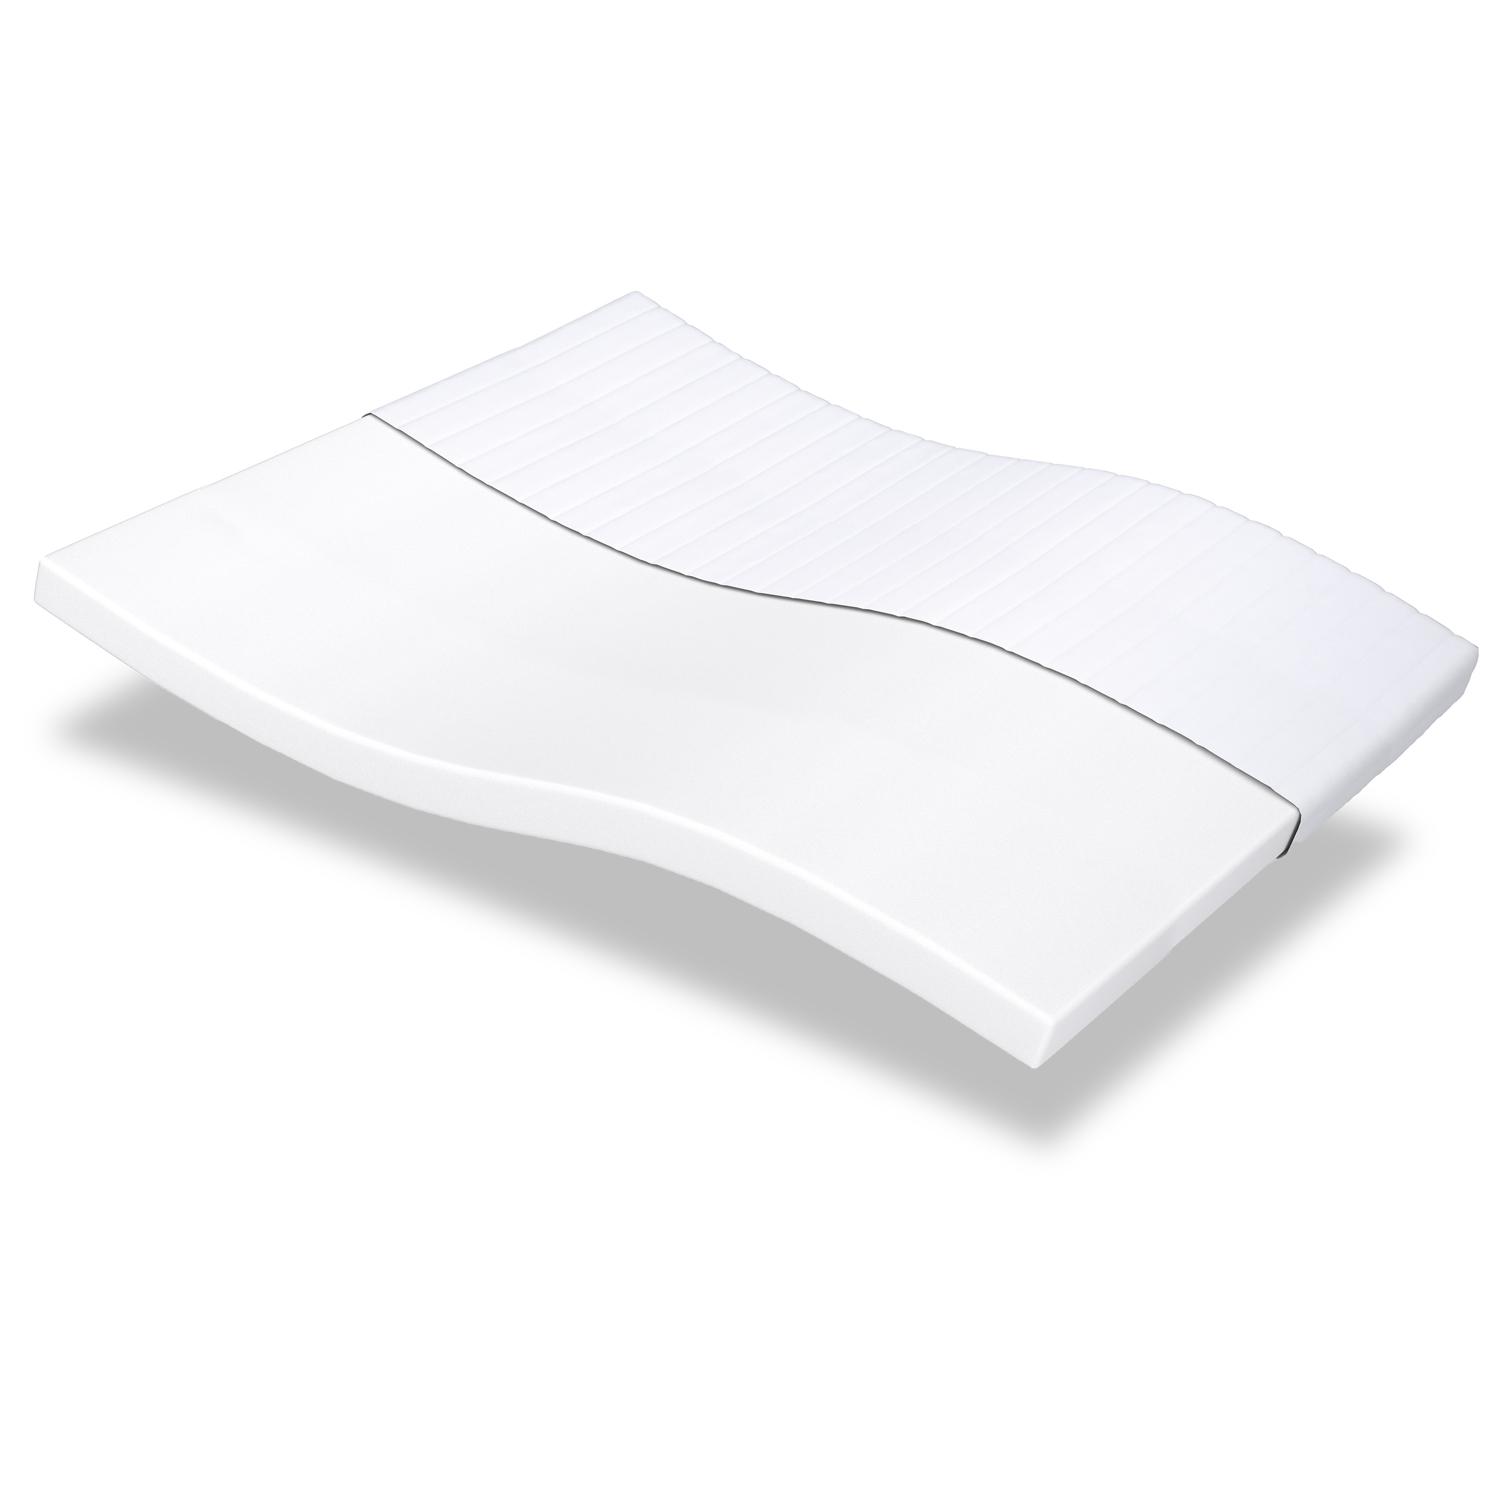 Comfort foam mattress K10 120 x 200 cm, height 10 cm, firmness level H3